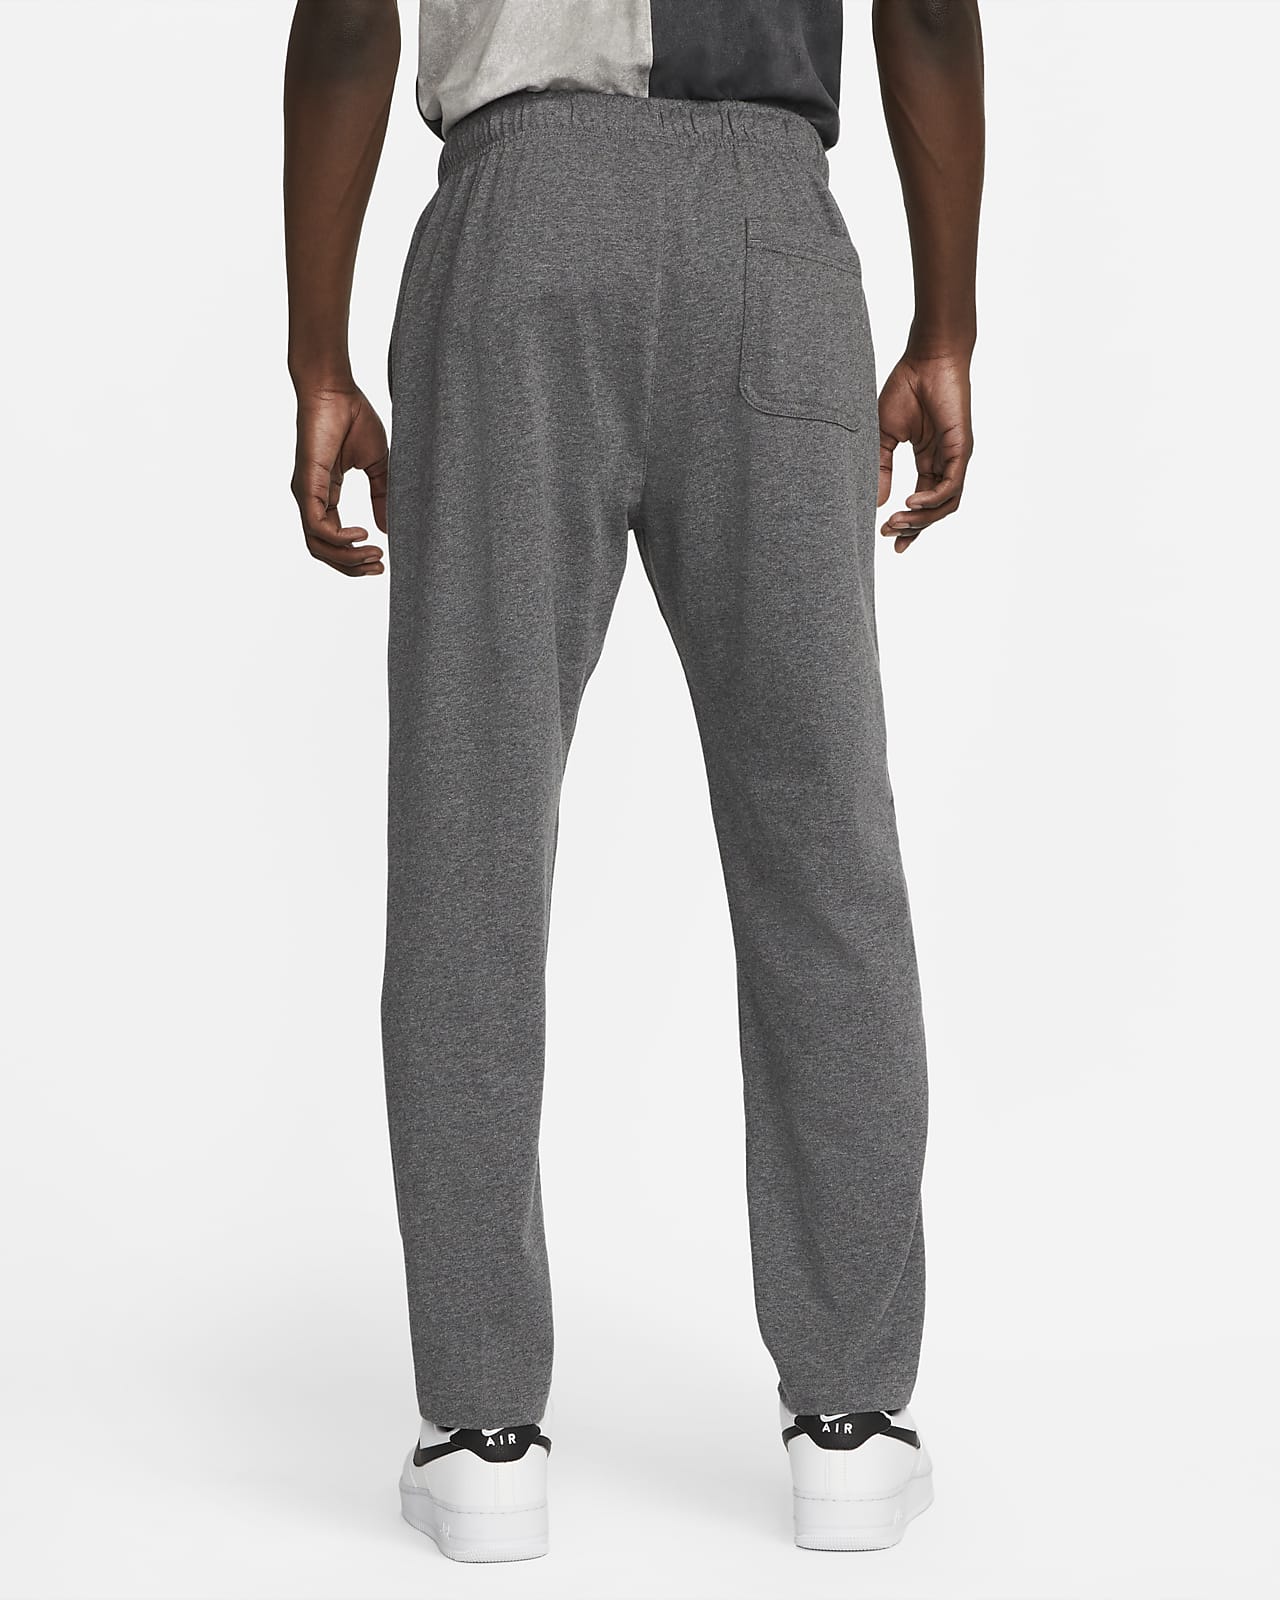 Nogen Mariner kærlighed Nike Sportswear Club Fleece Men's Jersey Pants. Nike.com